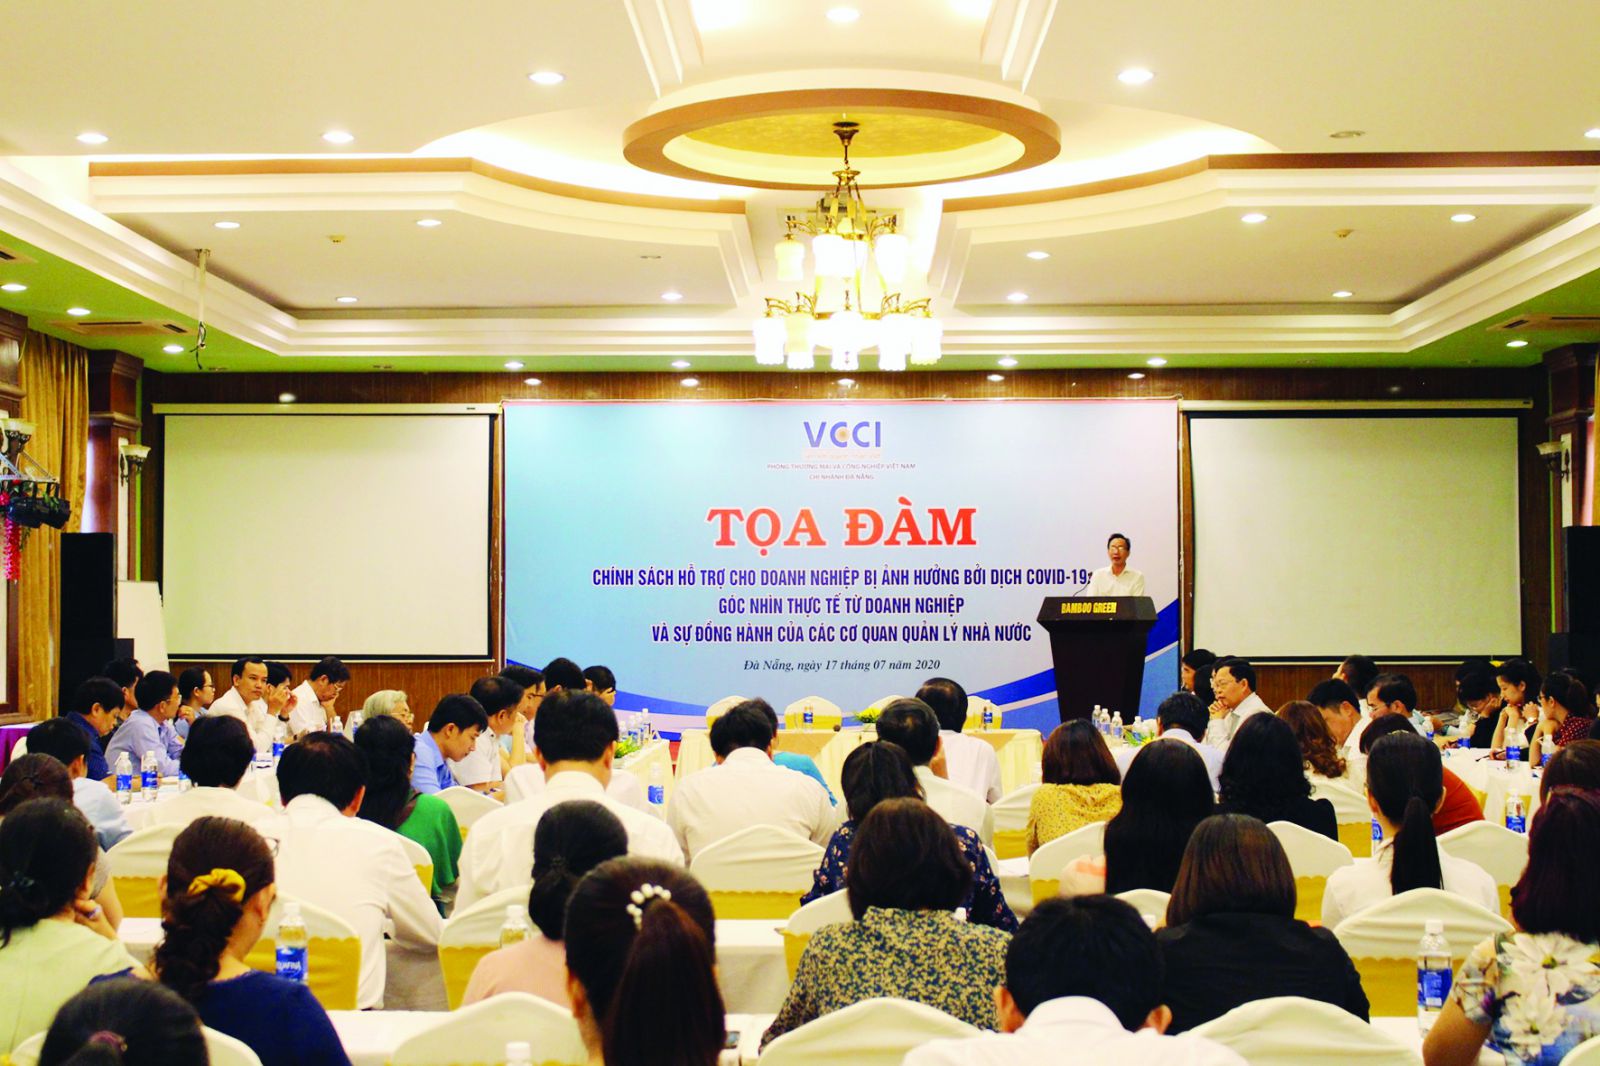  Khảo sát của Phòng Thương mại và Công nghiệp Việt Nam mới đâyp/chỉ ra, mới có khoảng 3% doanh nghiệp nhận được các hỗ trợ từ chính sách khắc phục khó khăn do dịch COVID–19. Ảnh: Quốc Tuấn